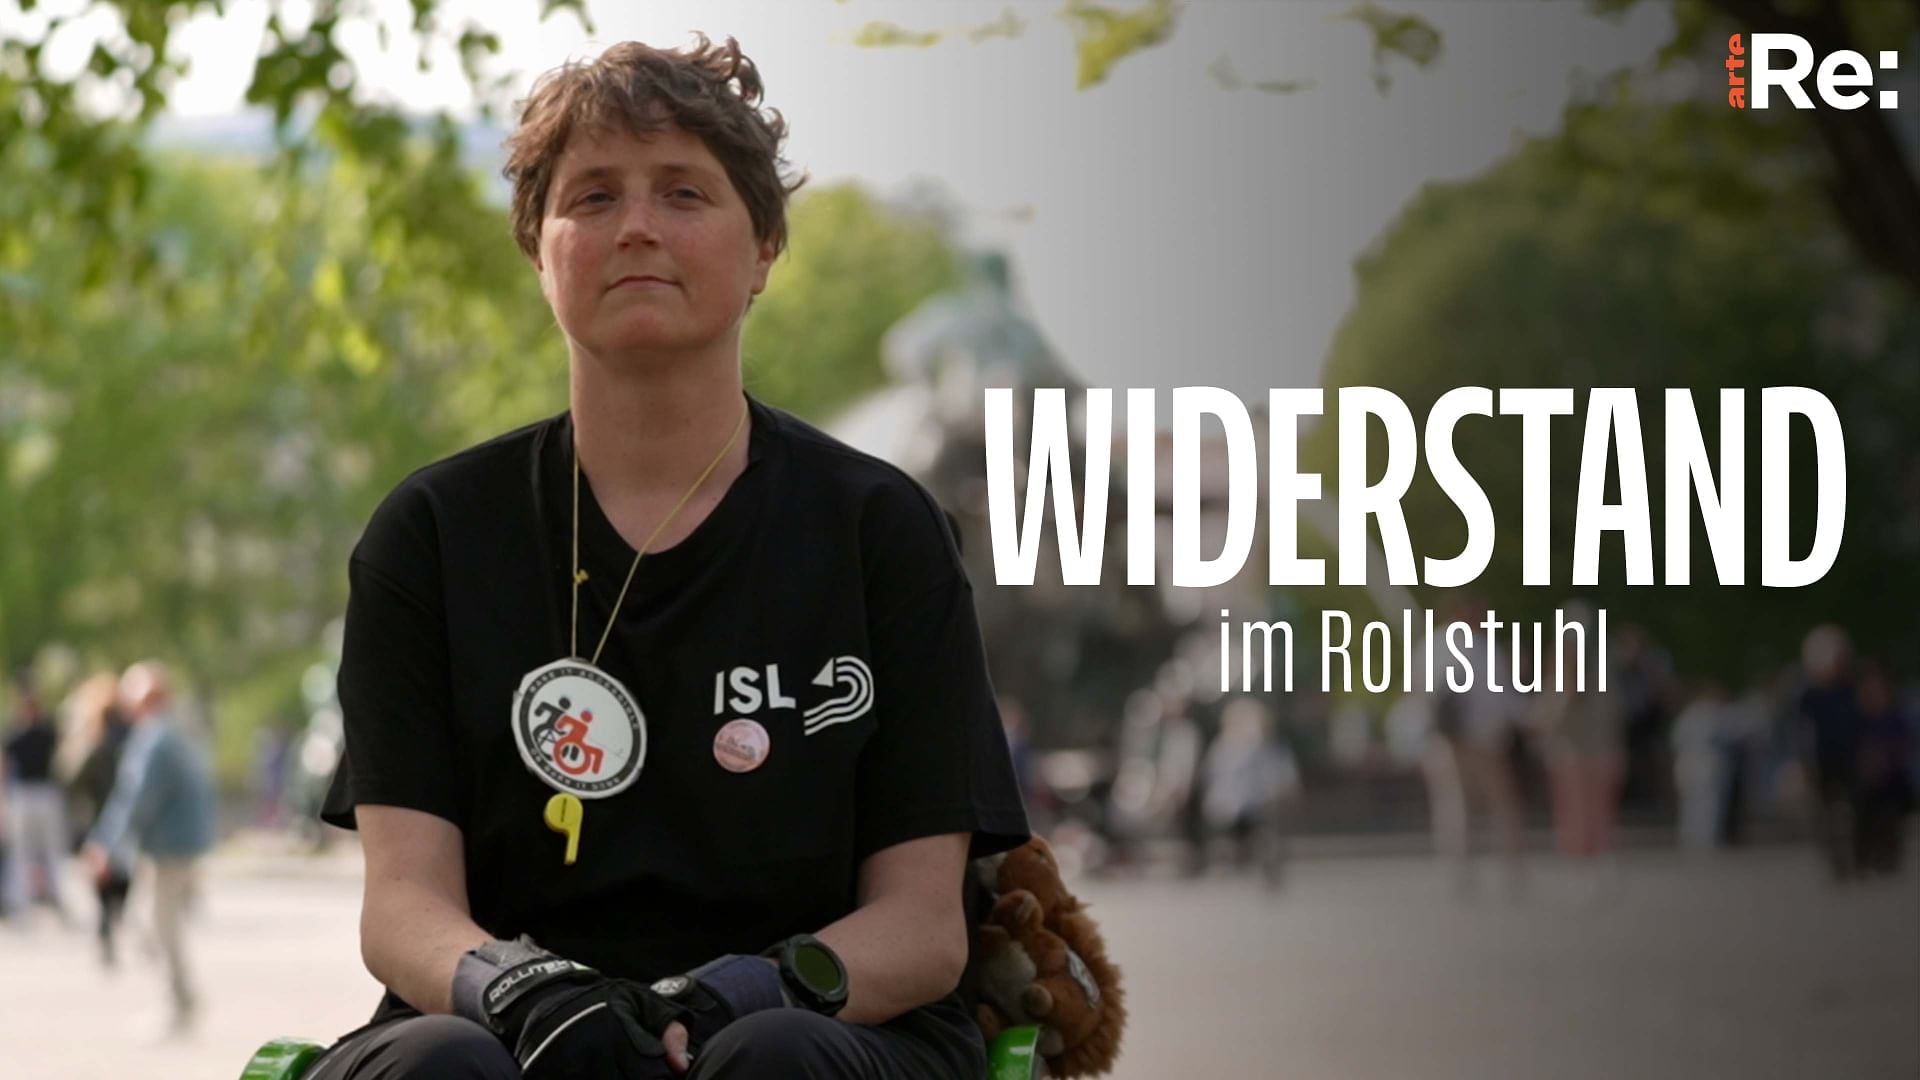 Re: Widerstand im Rollstuhl - Die Kletteraktivistin Cécile